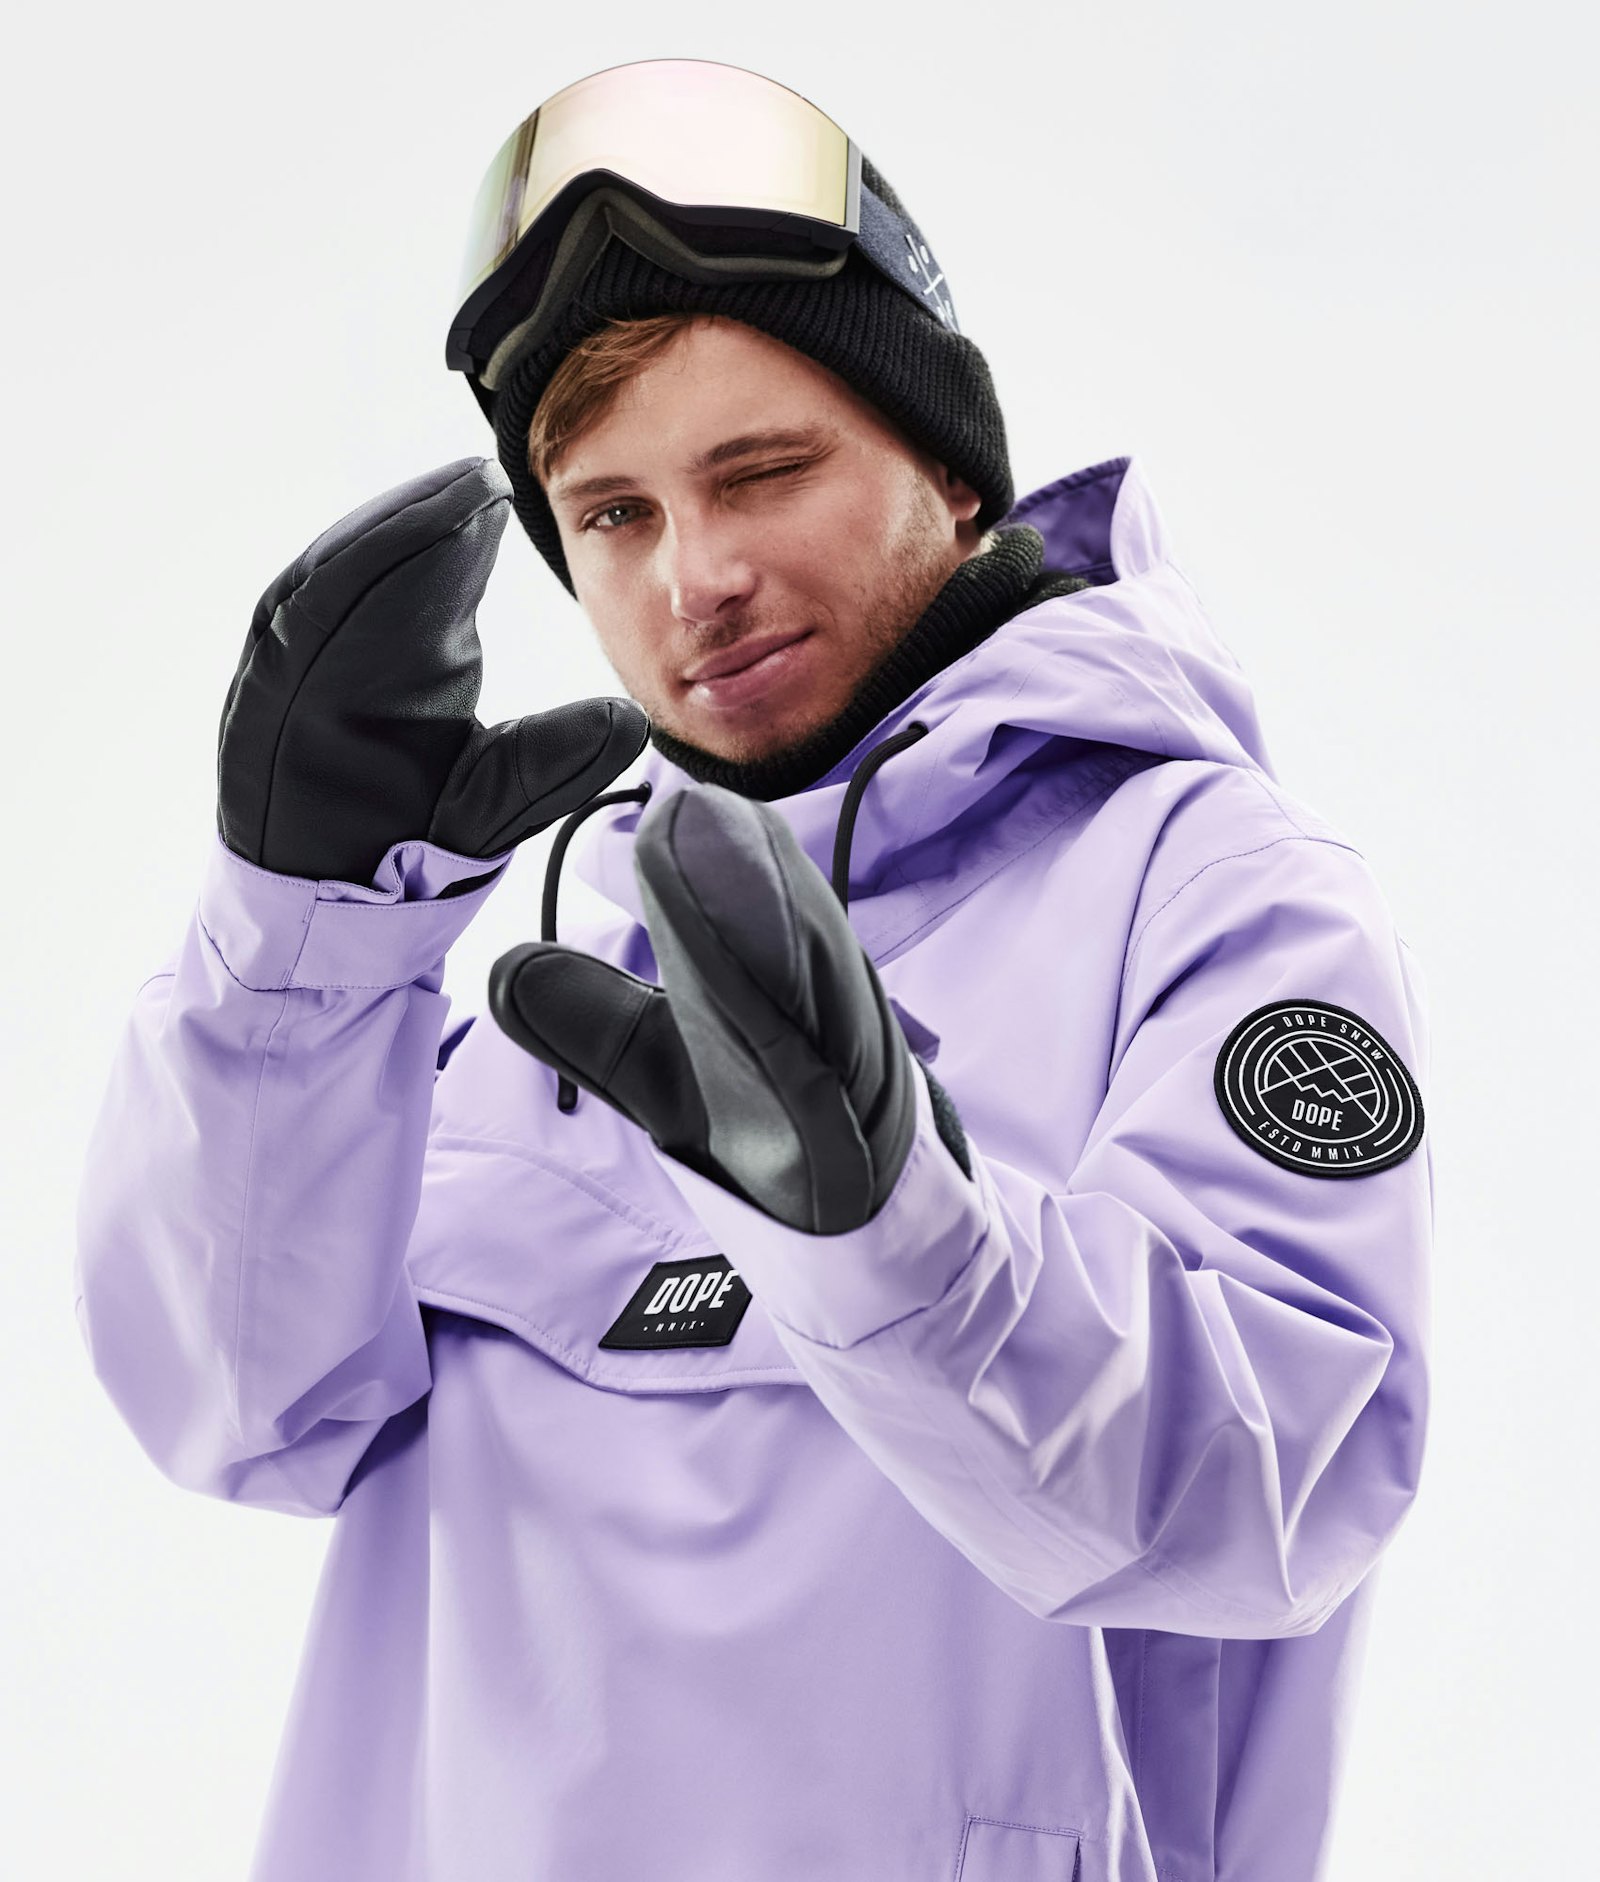 Blizzard 2021 Snowboard jas Heren Faded Violet